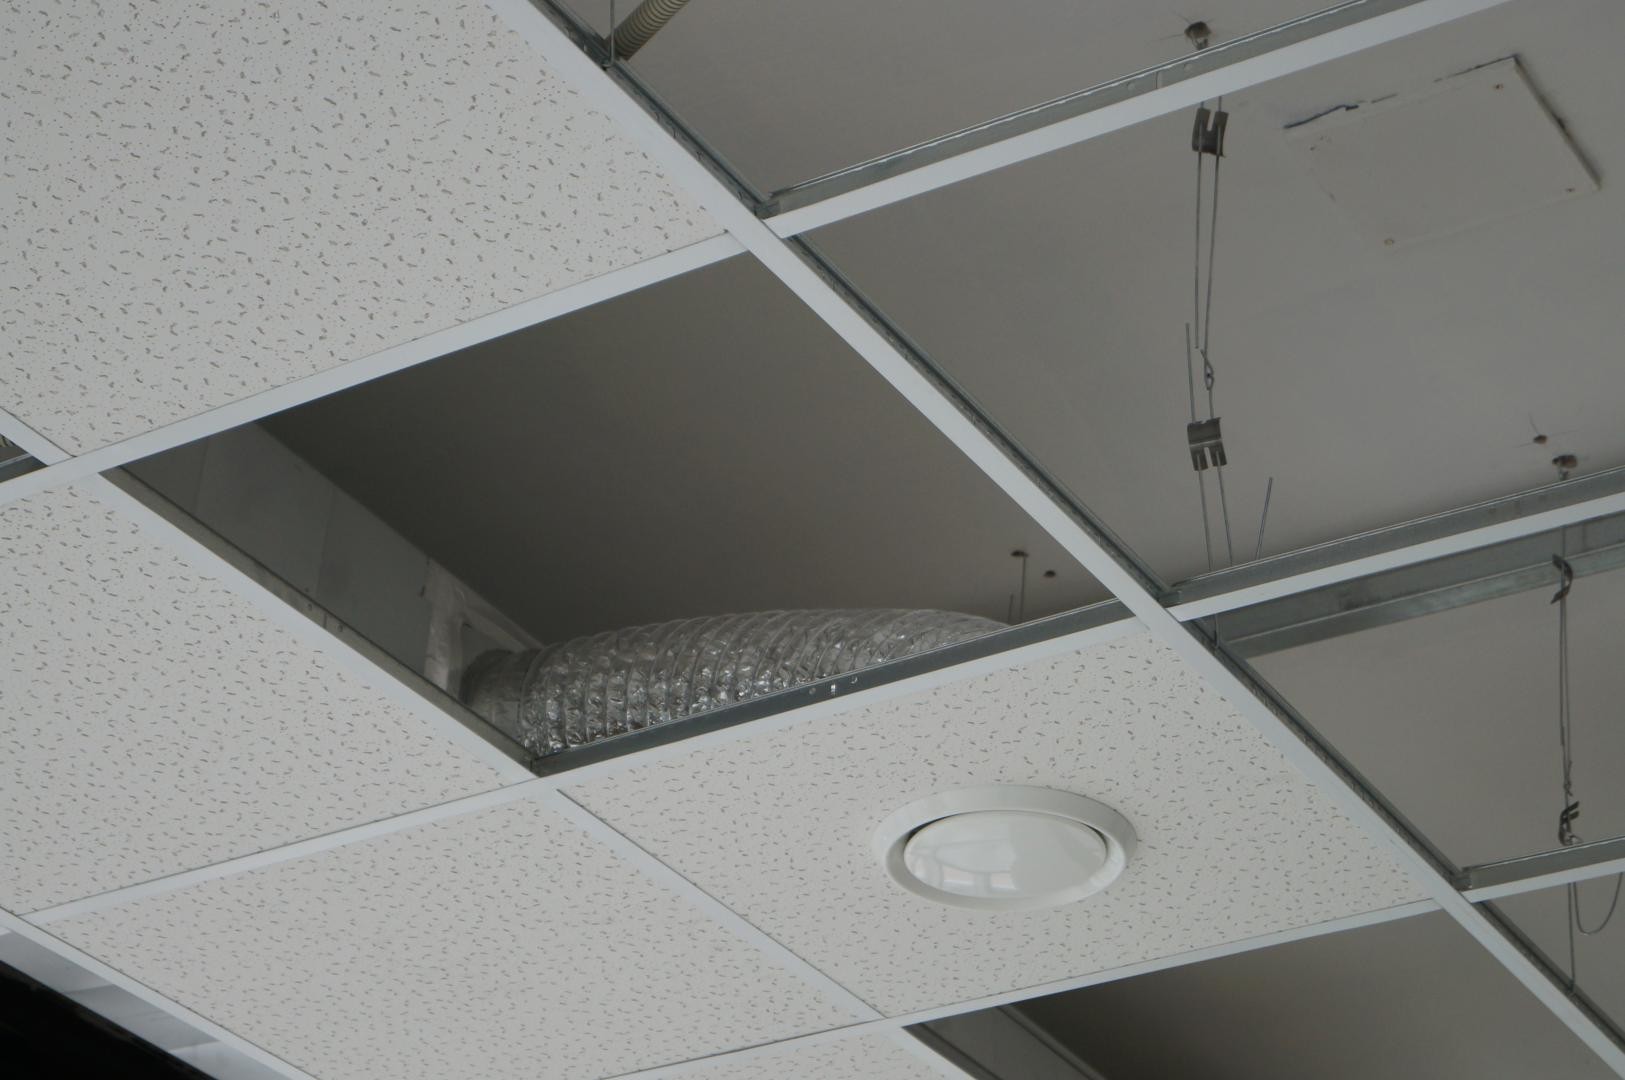 Comment poser un faux plafond ?